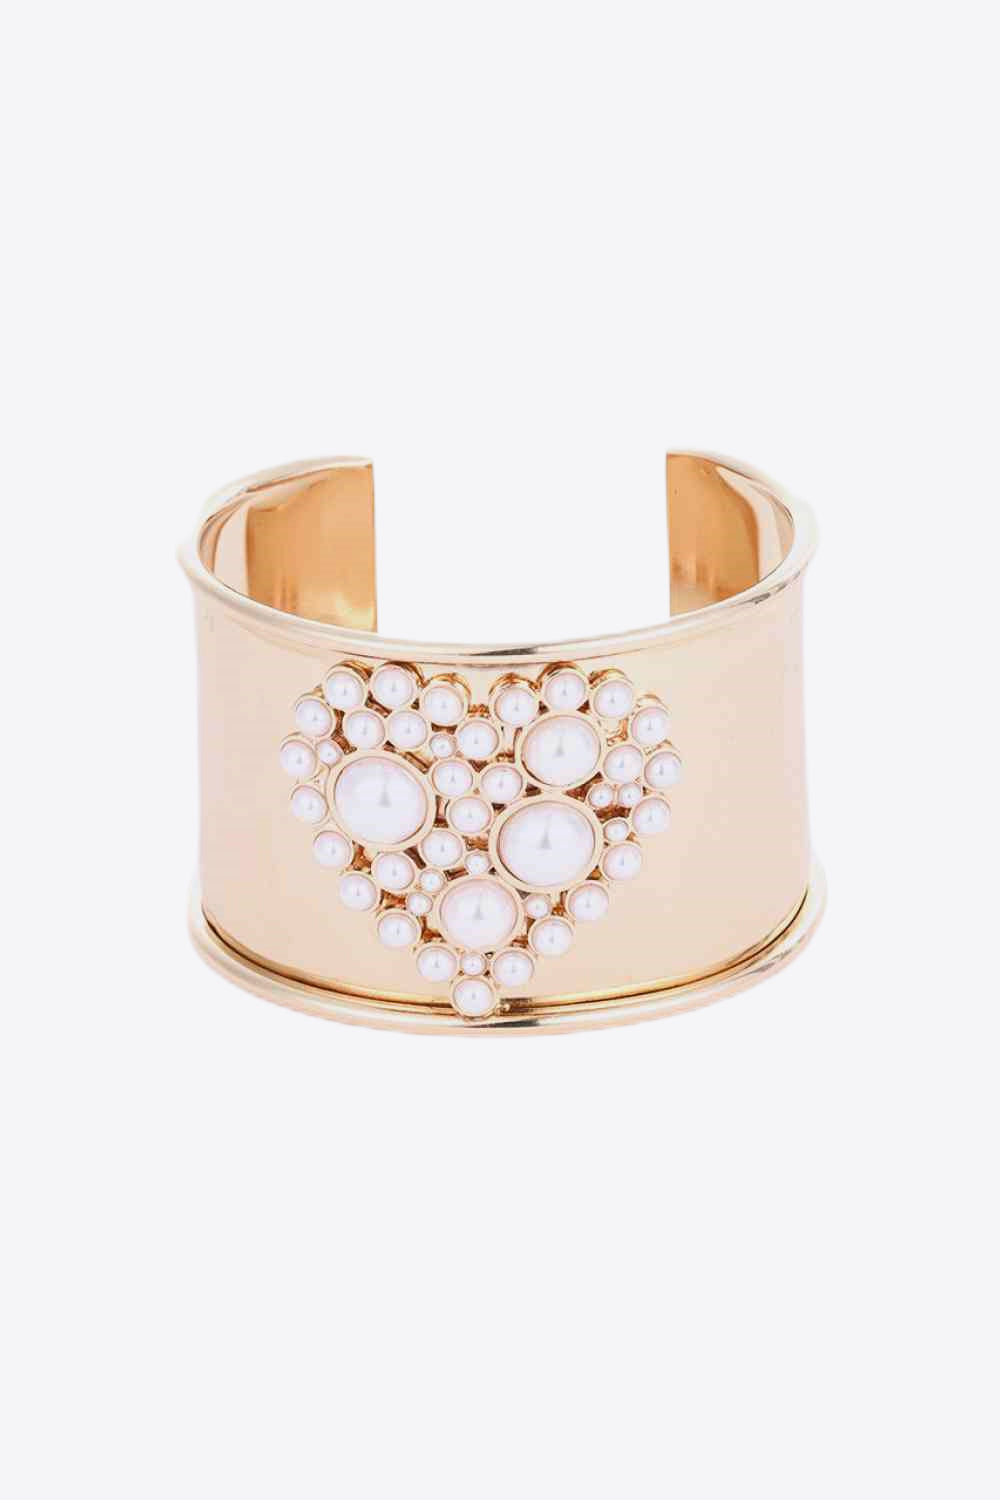 Heart Pearl Open Bracelet - Gold / One Size - Women’s Jewelry - Bracelets - 1 - 2024